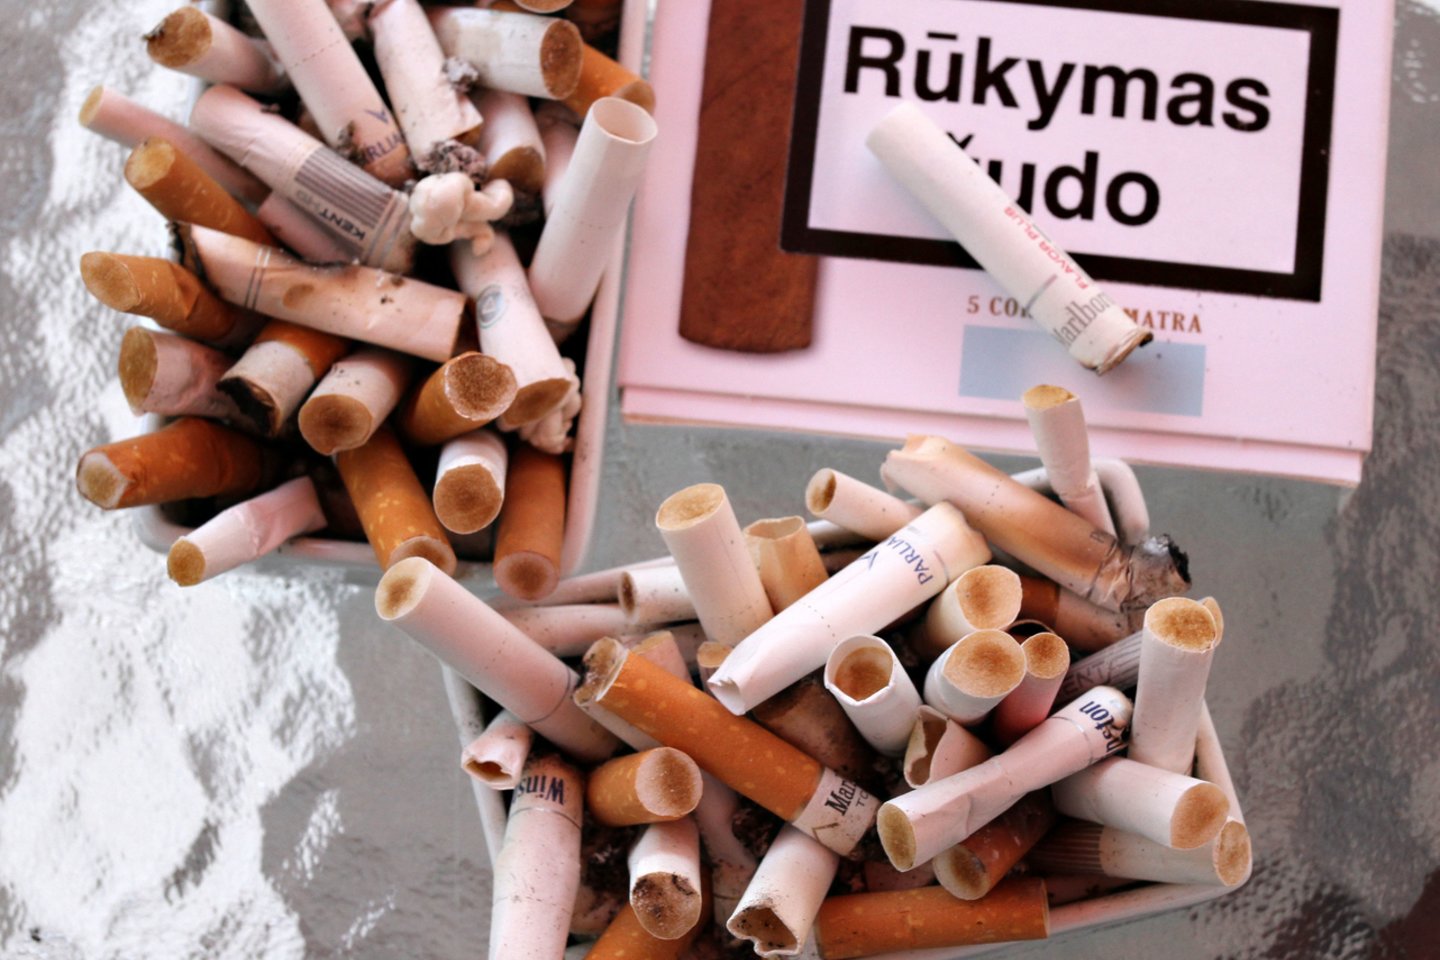 Cigaretė, cigaretės, nuorūkos, rūkymas žudo, plaučių vėžys<br>M.Patašiaus nuotr.